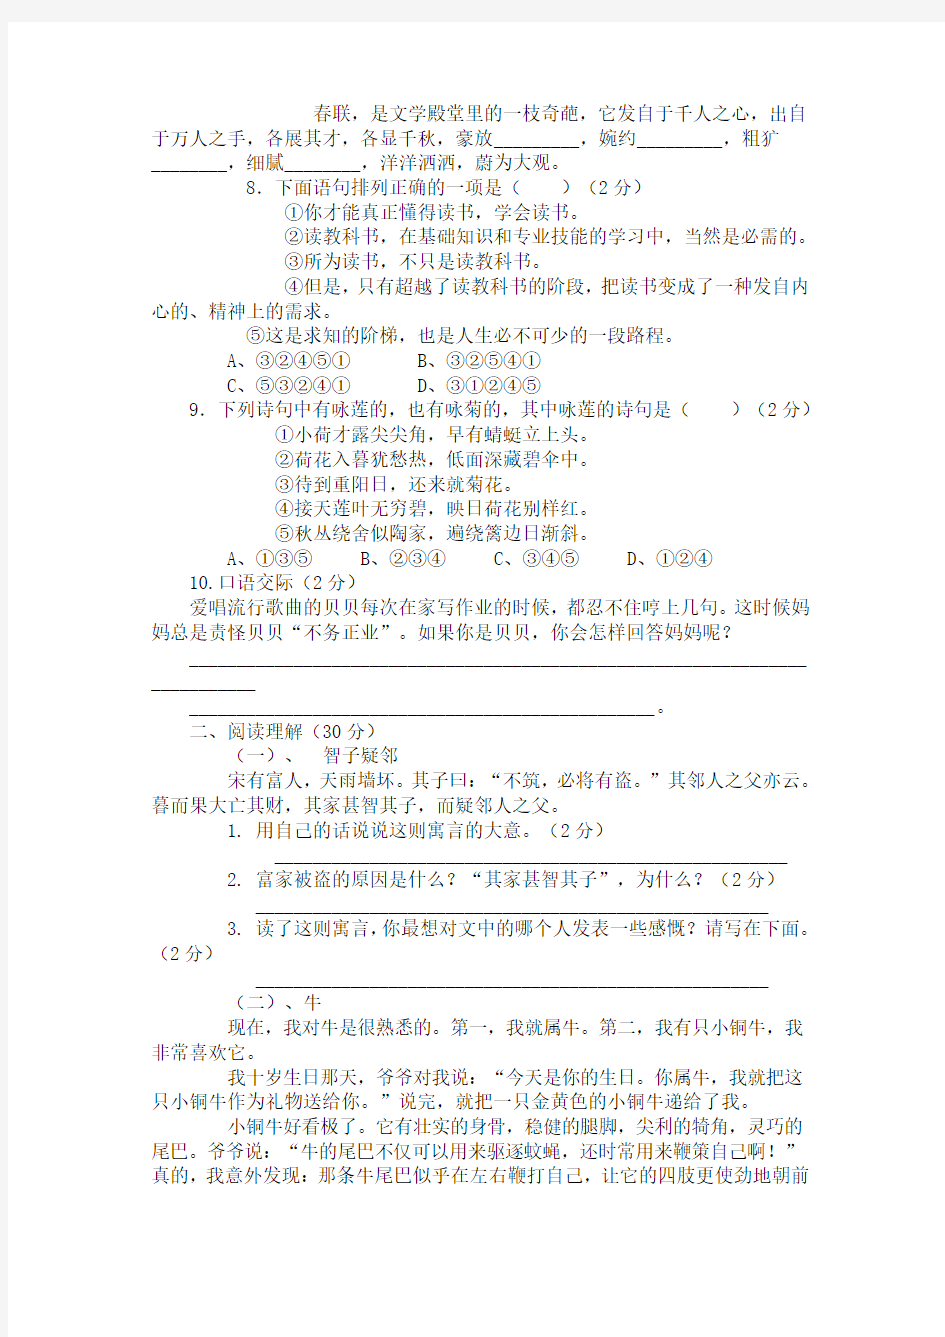 上海建平实验中学初一新生分班(摸底)语文考试模拟试卷(10套试卷带答案解析)